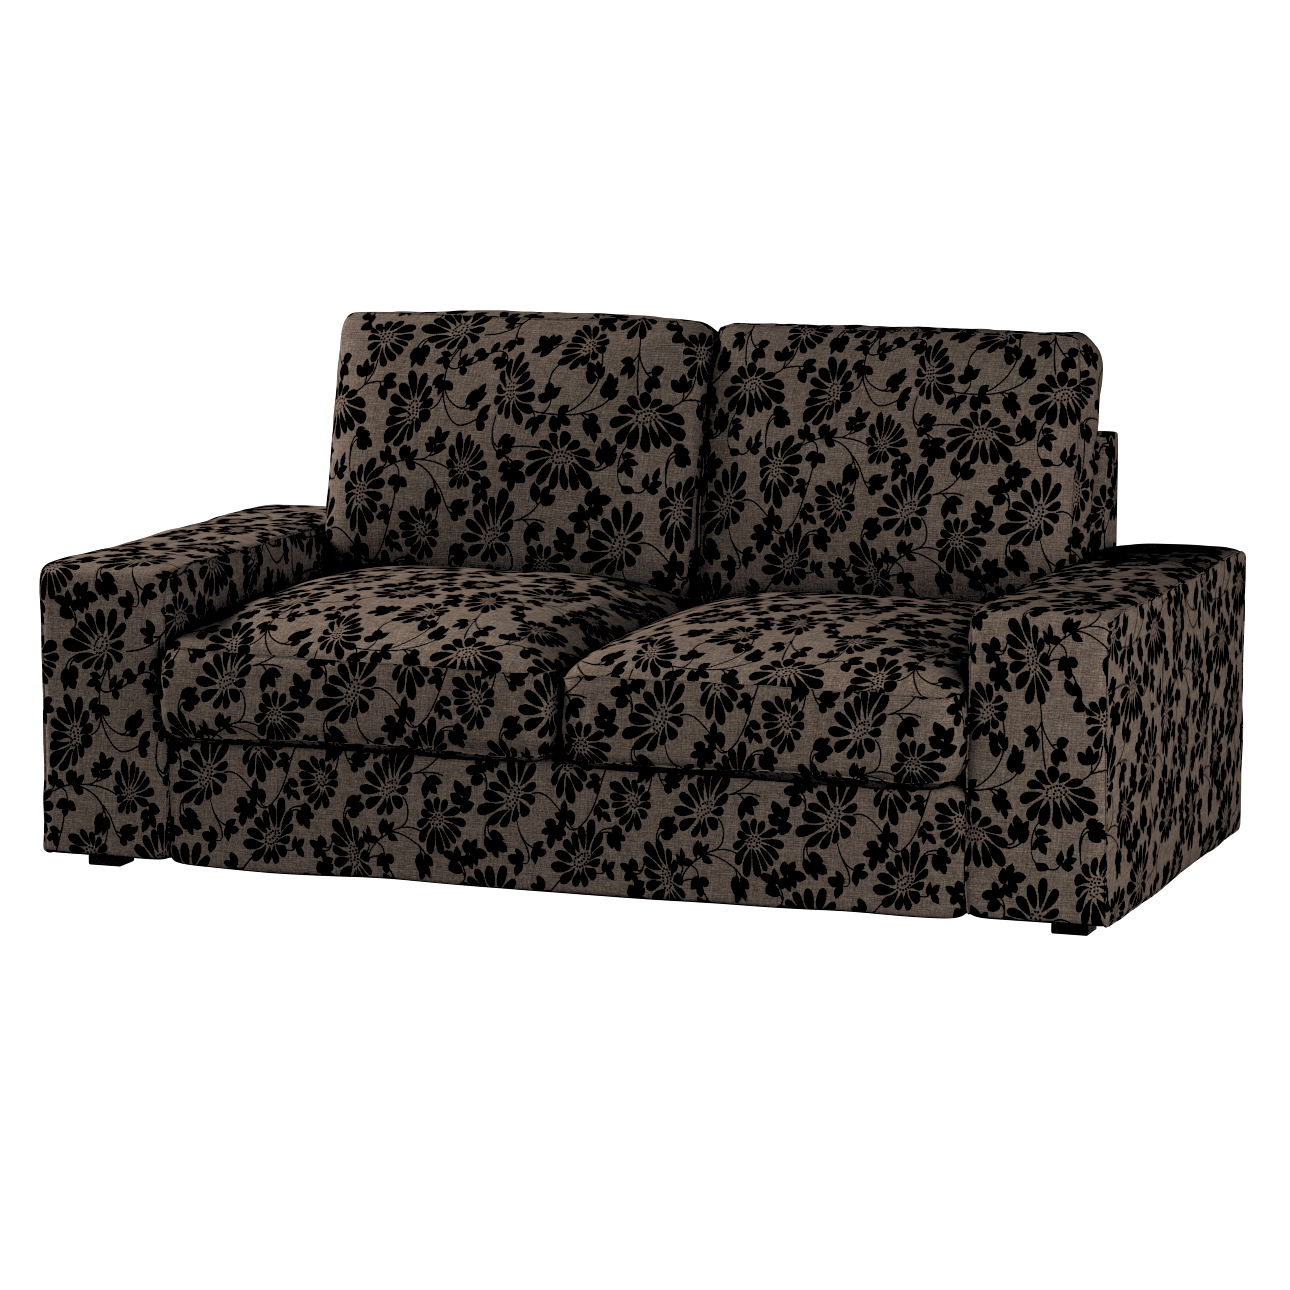 Bezug für Kivik 2-Sitzer Sofa, braun-schwarz, Bezug für Sofa Kivik 2-Sitzer günstig online kaufen